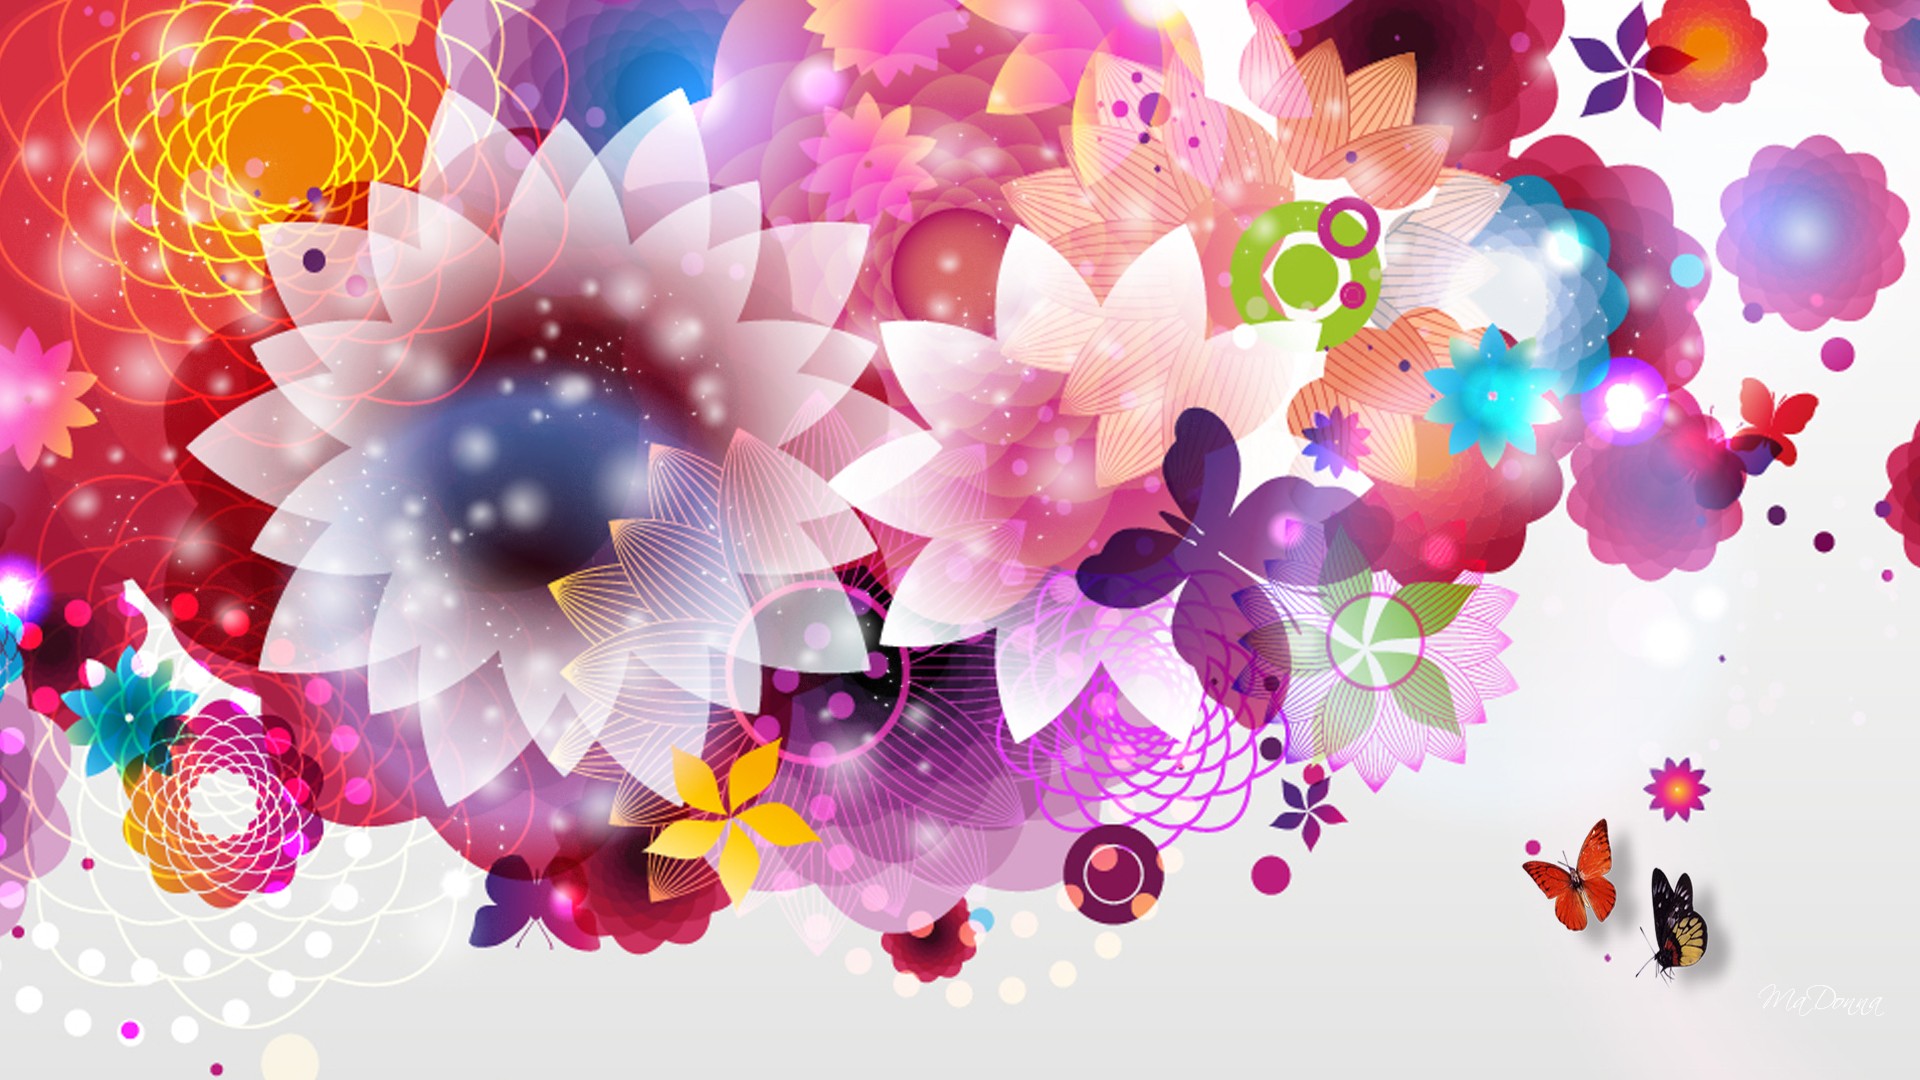 Cool abstract flower wallpaper HD - PixelsTalk.Net